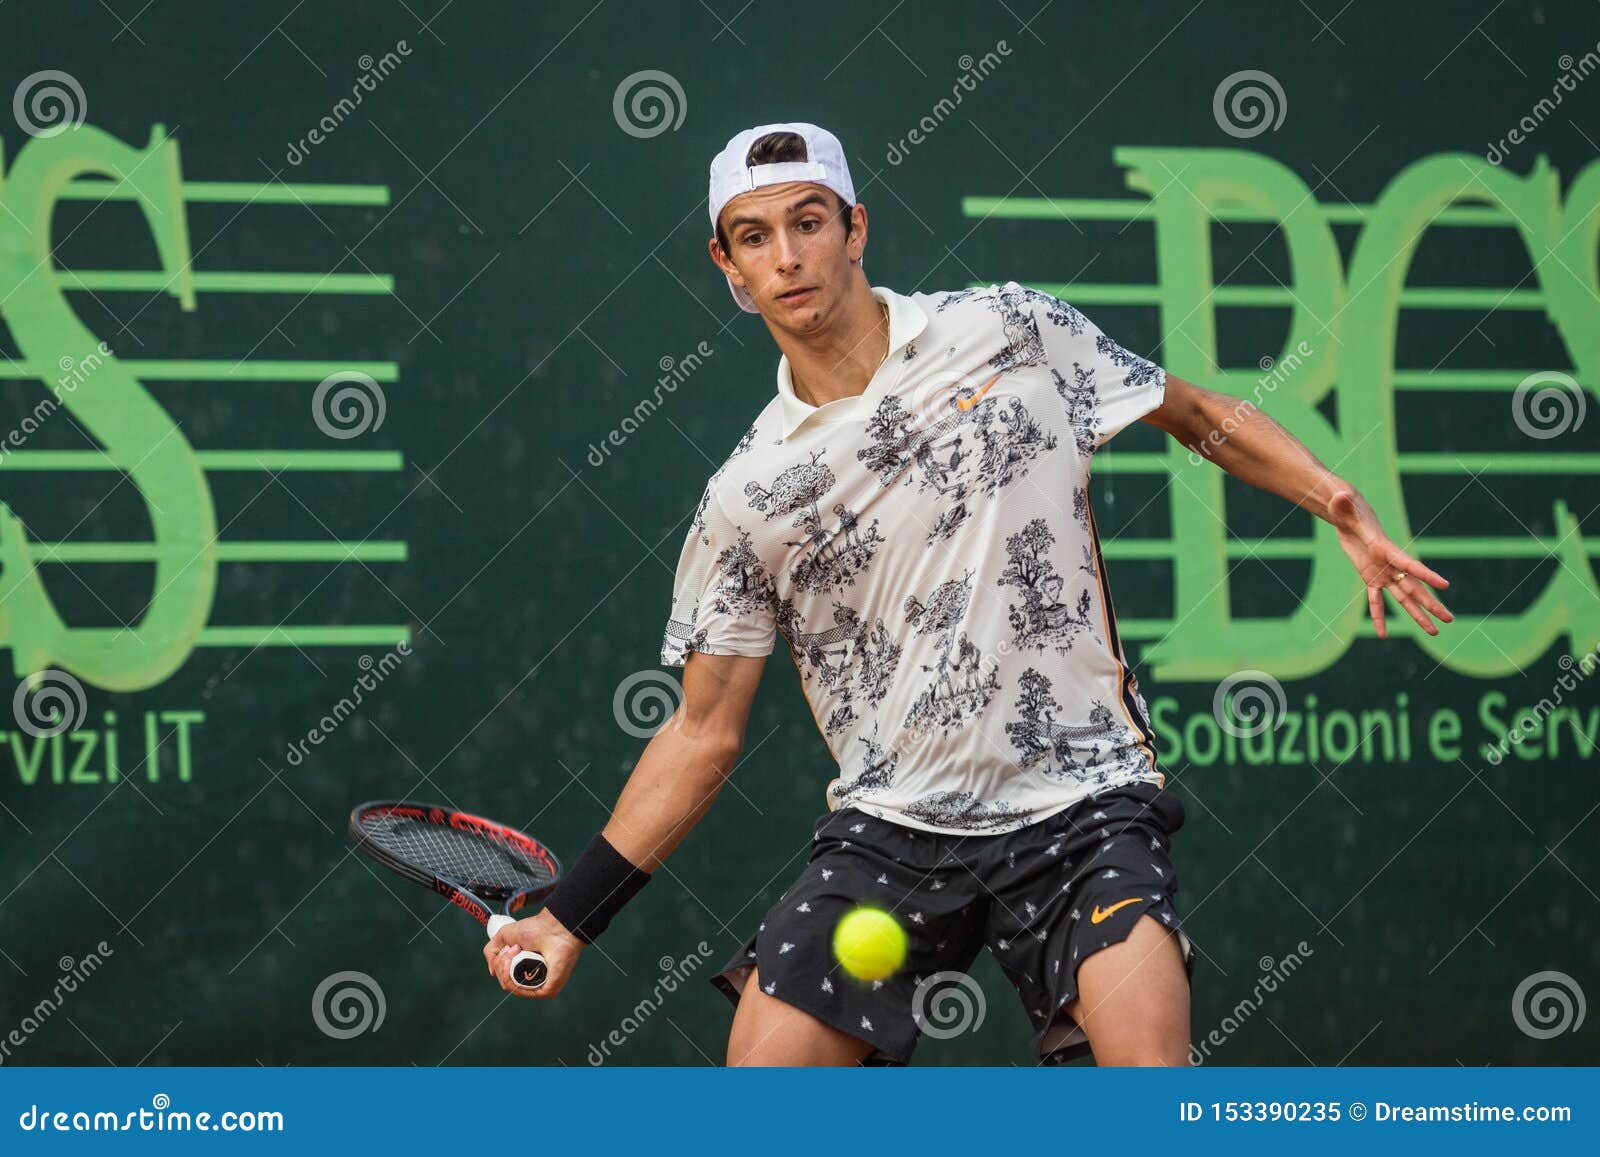 Lorenzo Musetti Atp Tennisspieler Redaktionelles Bild Bild Von Tennis Spieler 153390235